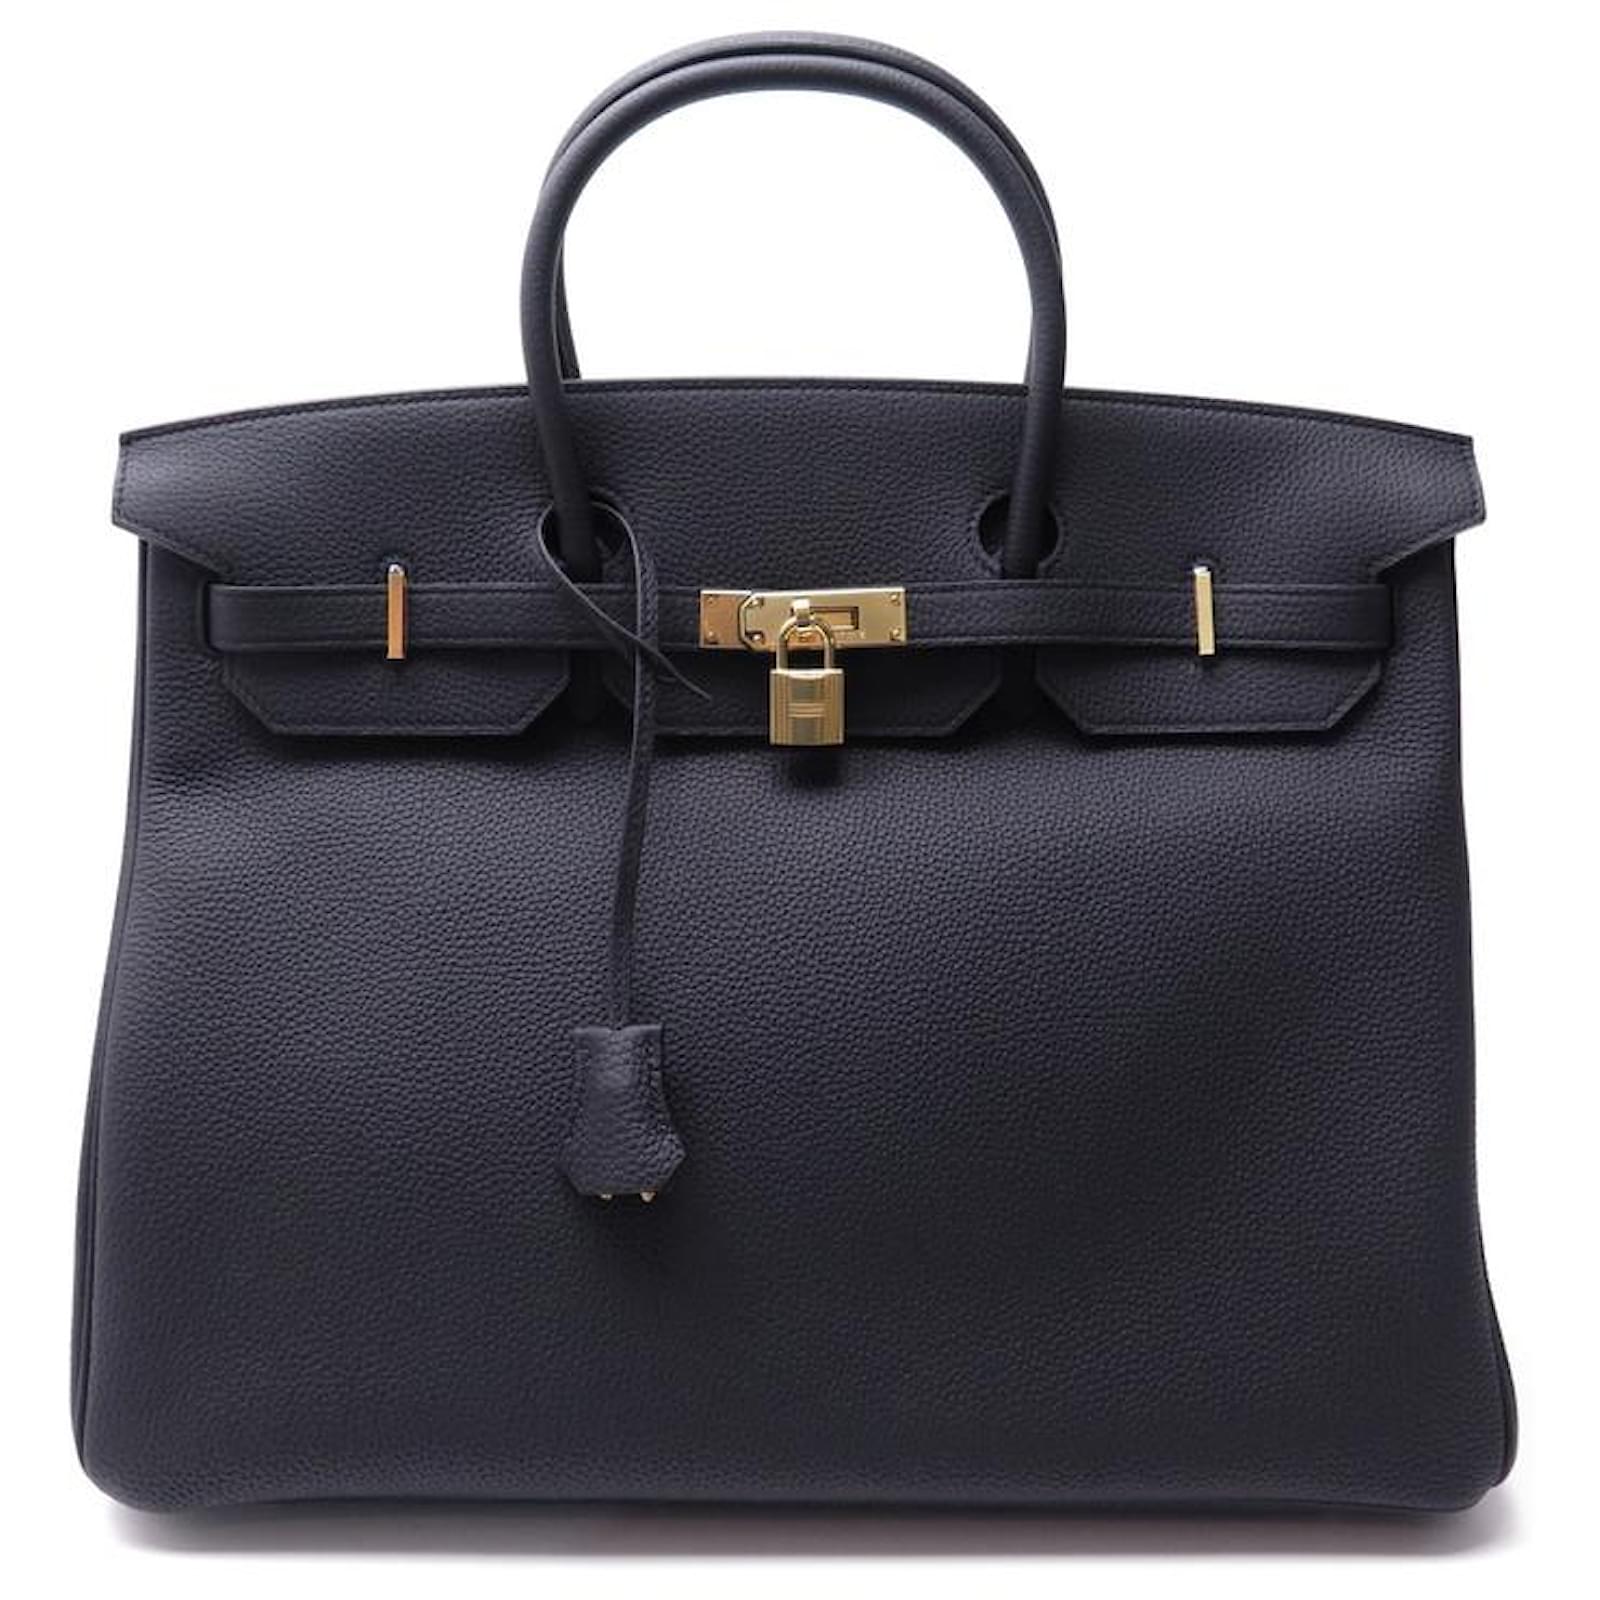 Hermès NEW HERMES BIRKIN HANDBAG 40 black Togo leather 2020 GOLD BAG ...